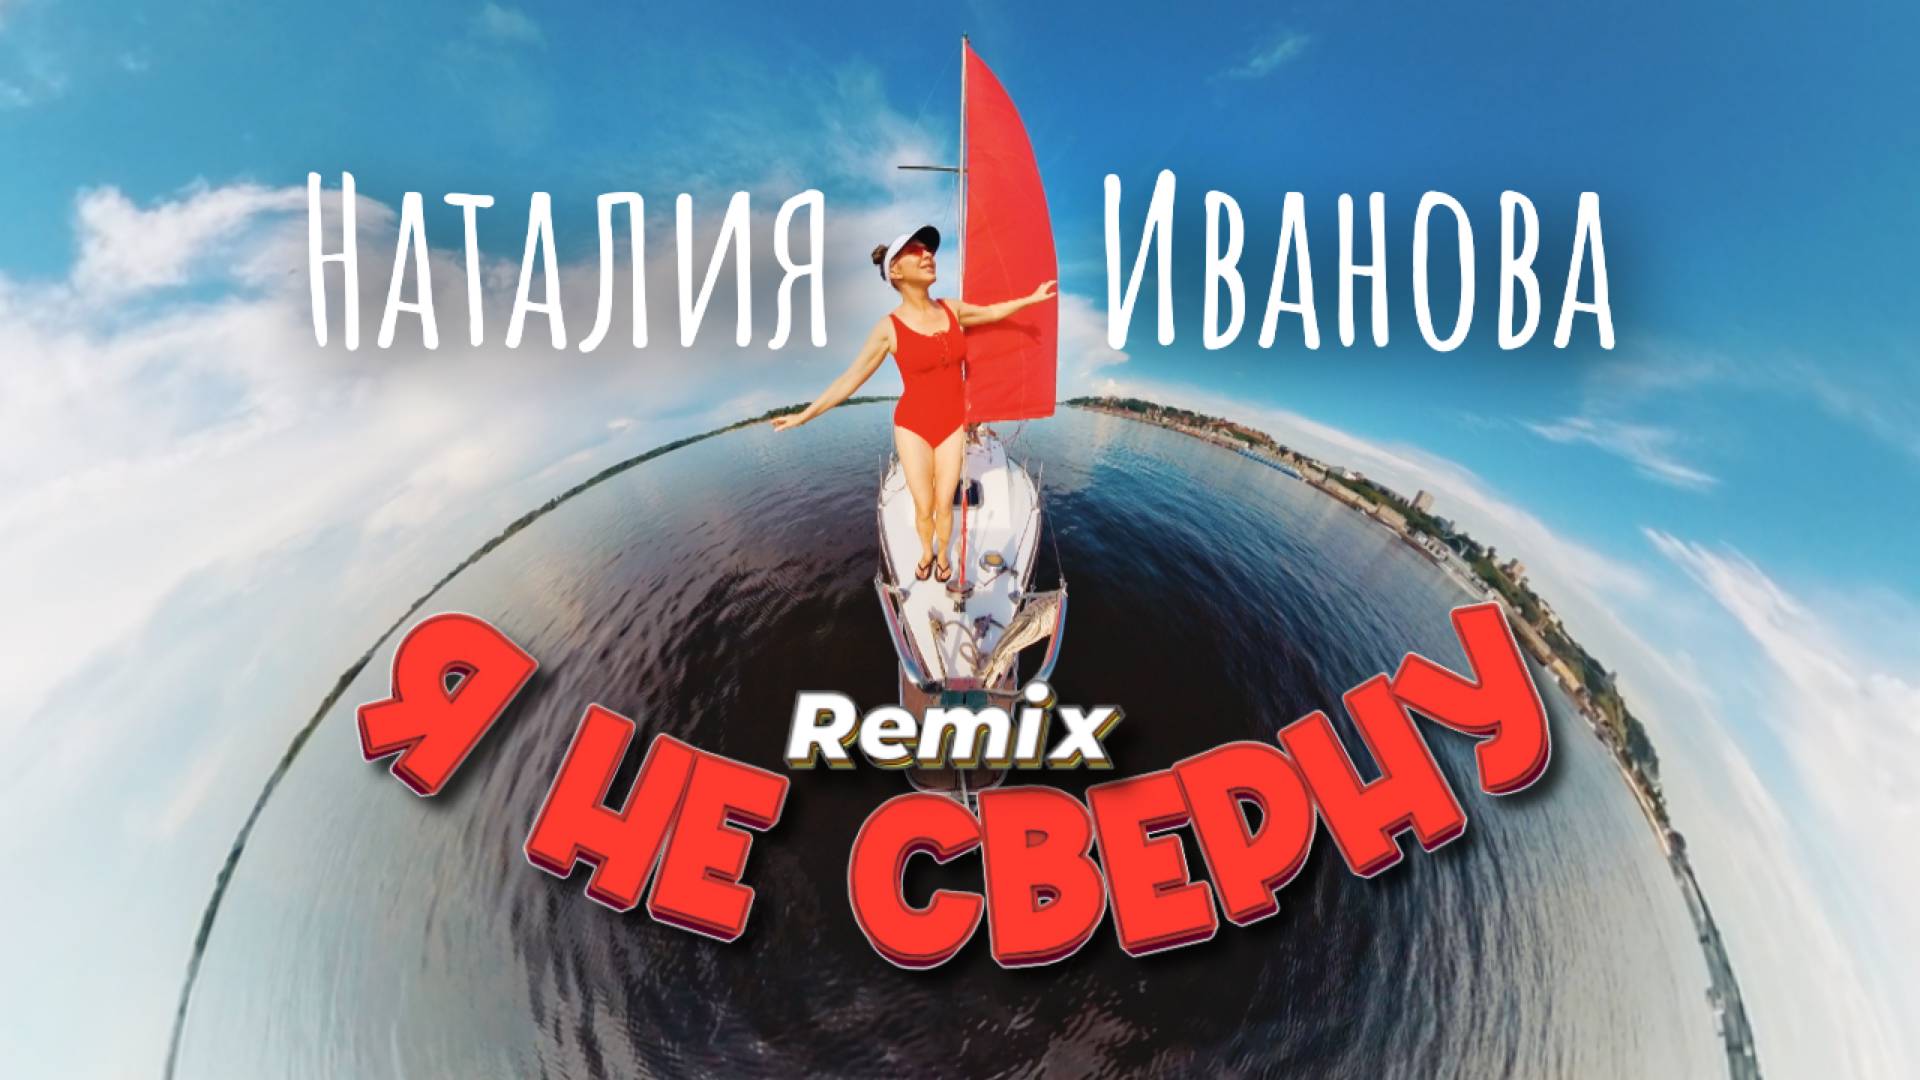 Наталия Иванова – Я не сверну (Remix)